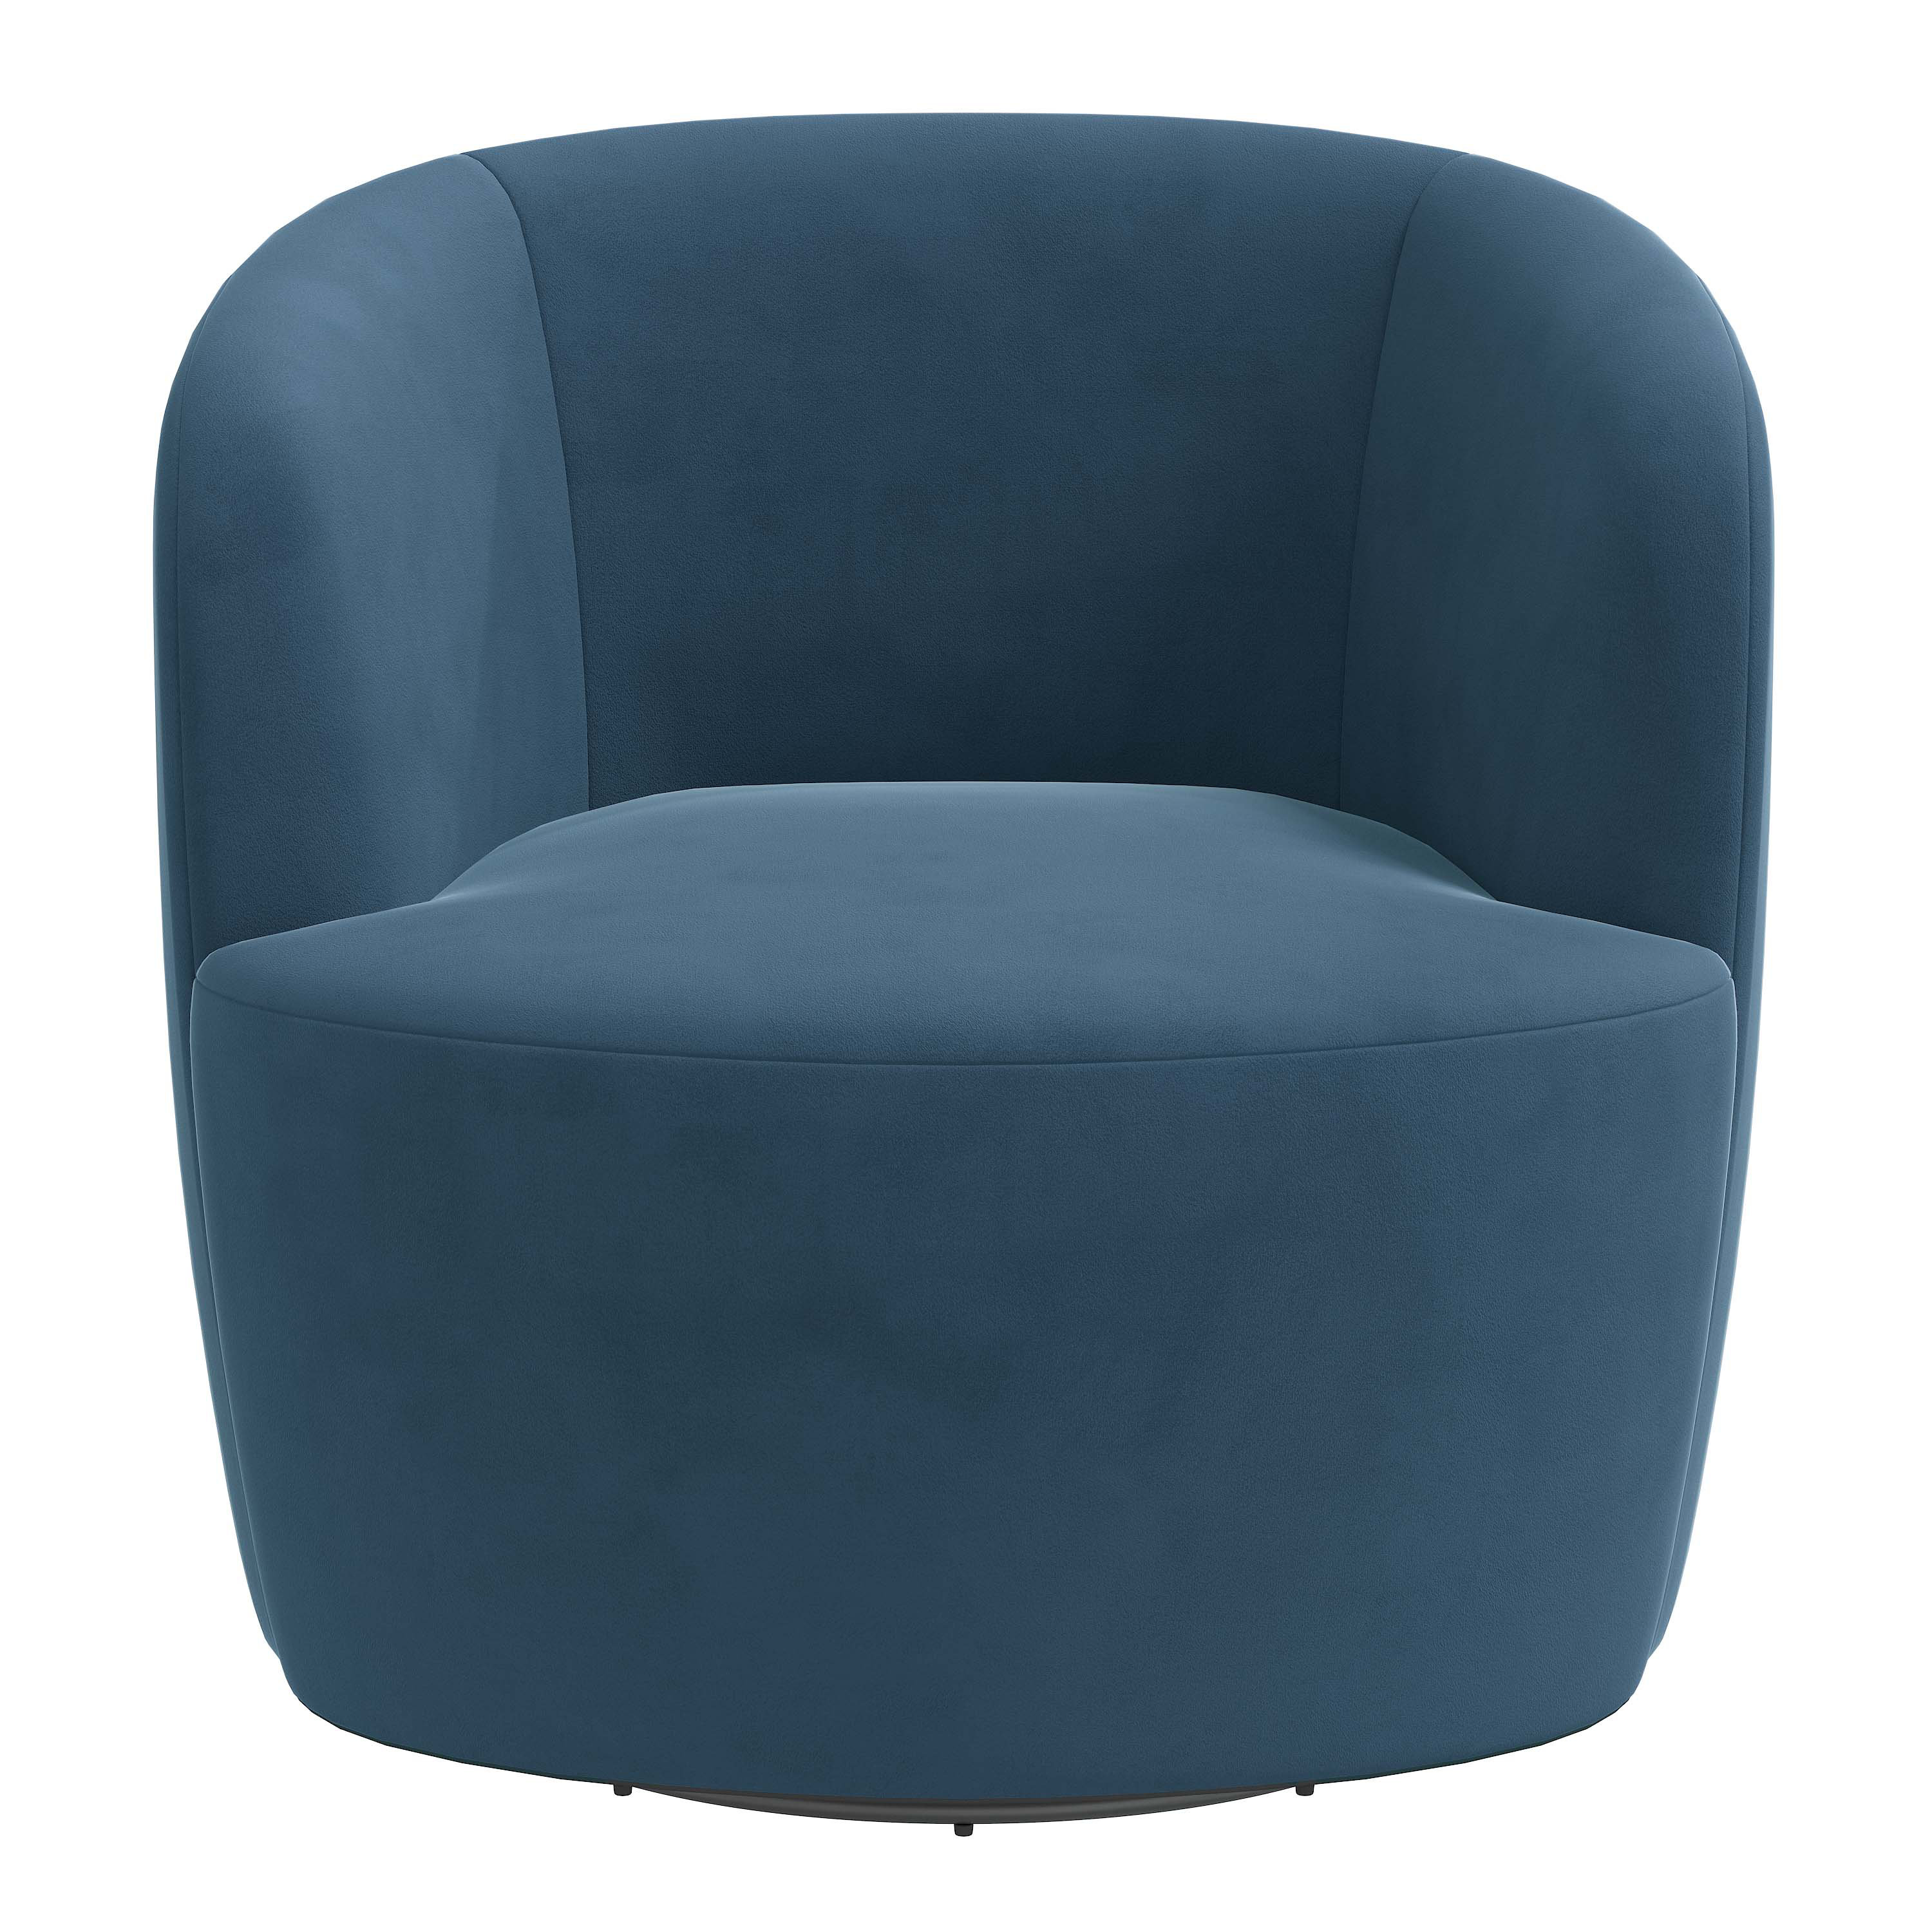 Joss & Main Mina Upholstered Swivel Barrel Chair & Reviews | Wayfair